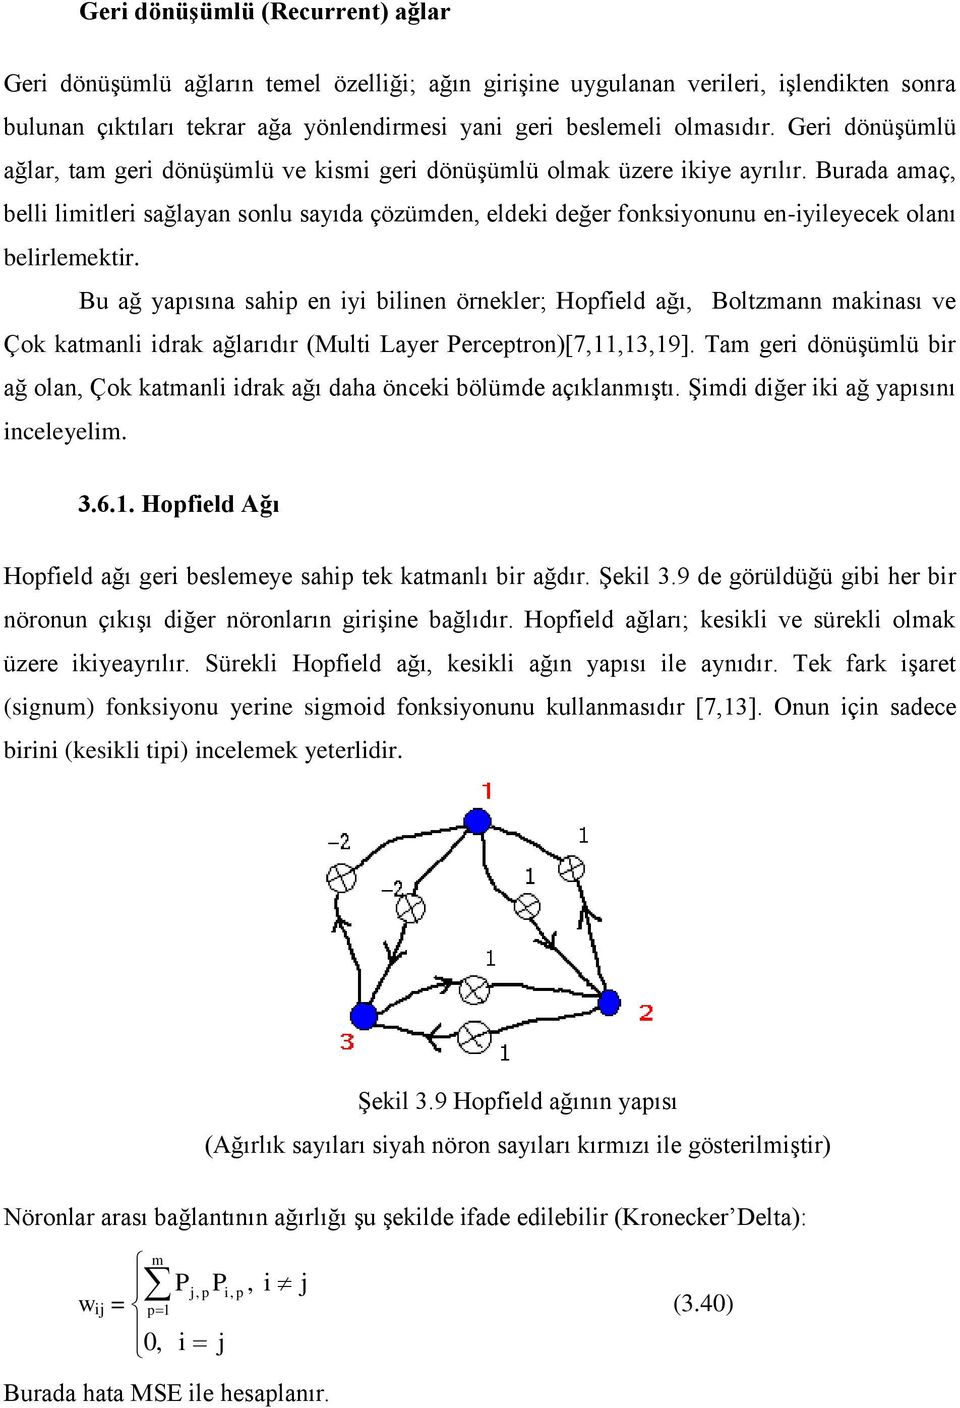 B ağ yapısına sahp en y blnen örnekler; Hopfeld ağı, Boltzmann maknası ve Çok katmanl drak ağlarıdır Mlt Layer Perceptron[7,11,13,19].